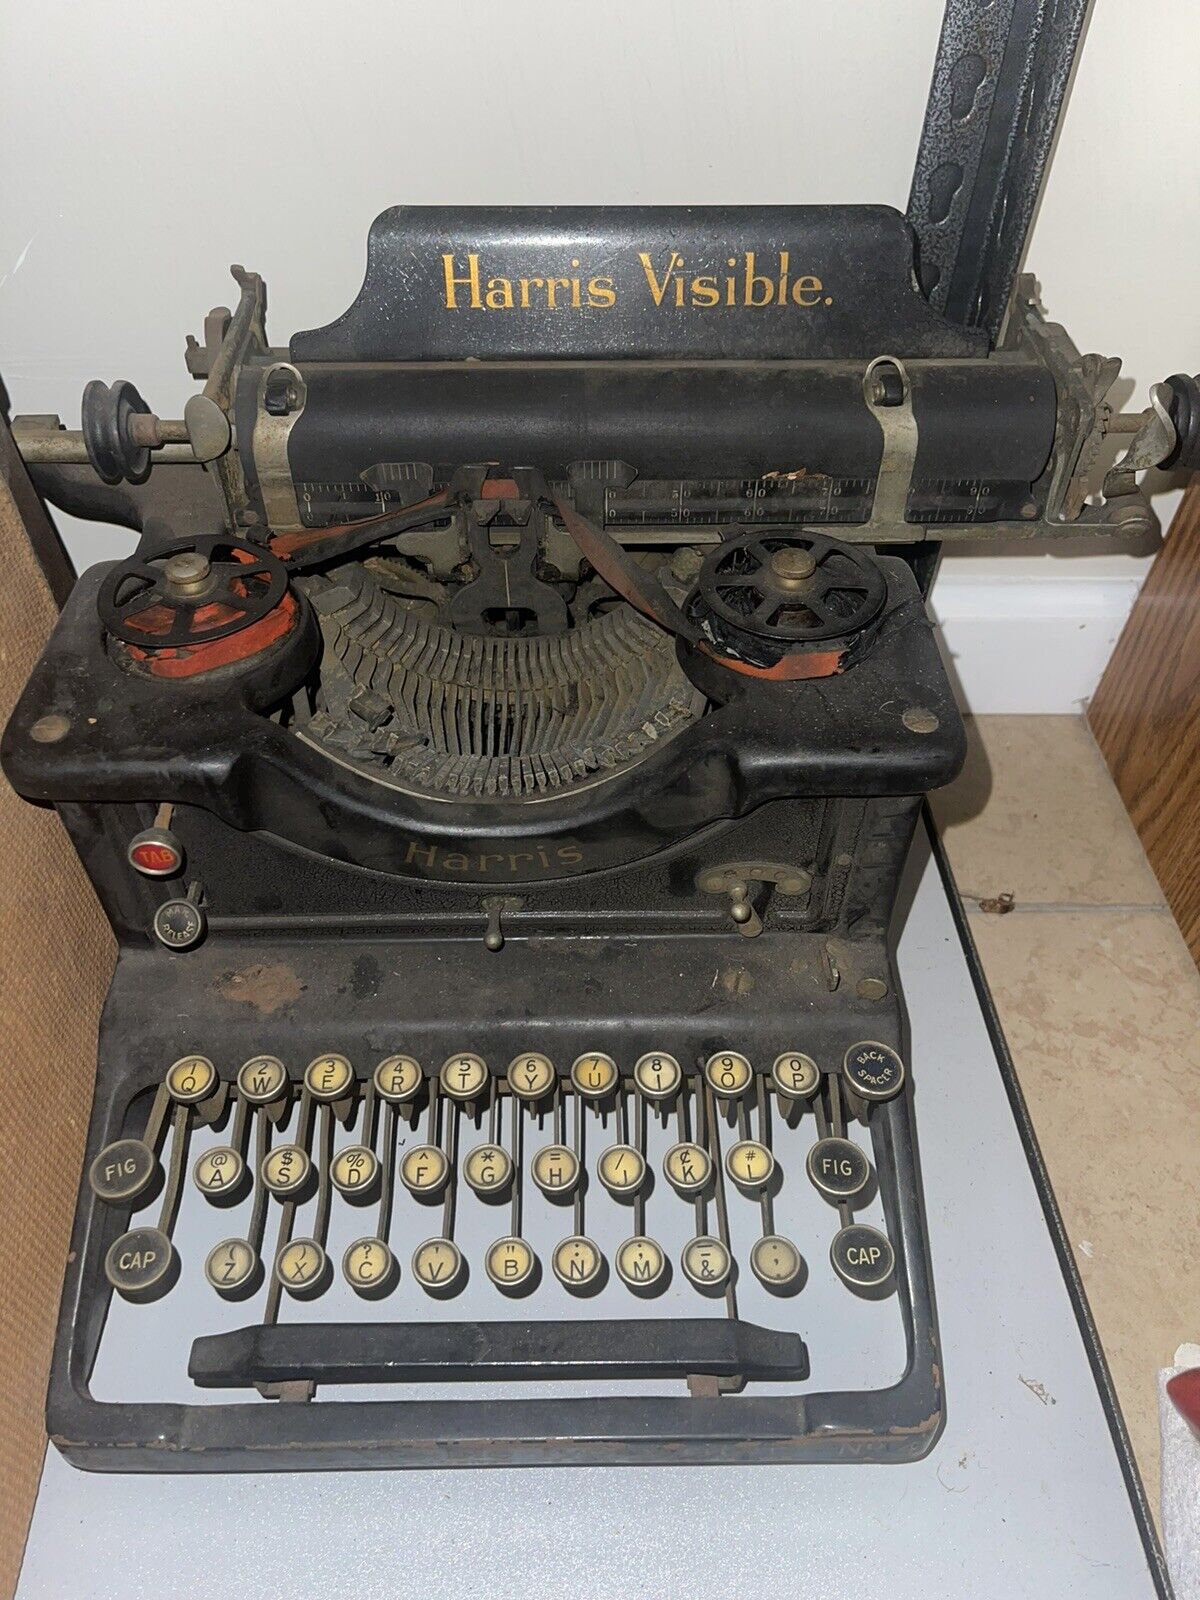 1912 Antique Harris Visible Typewriter, RARE